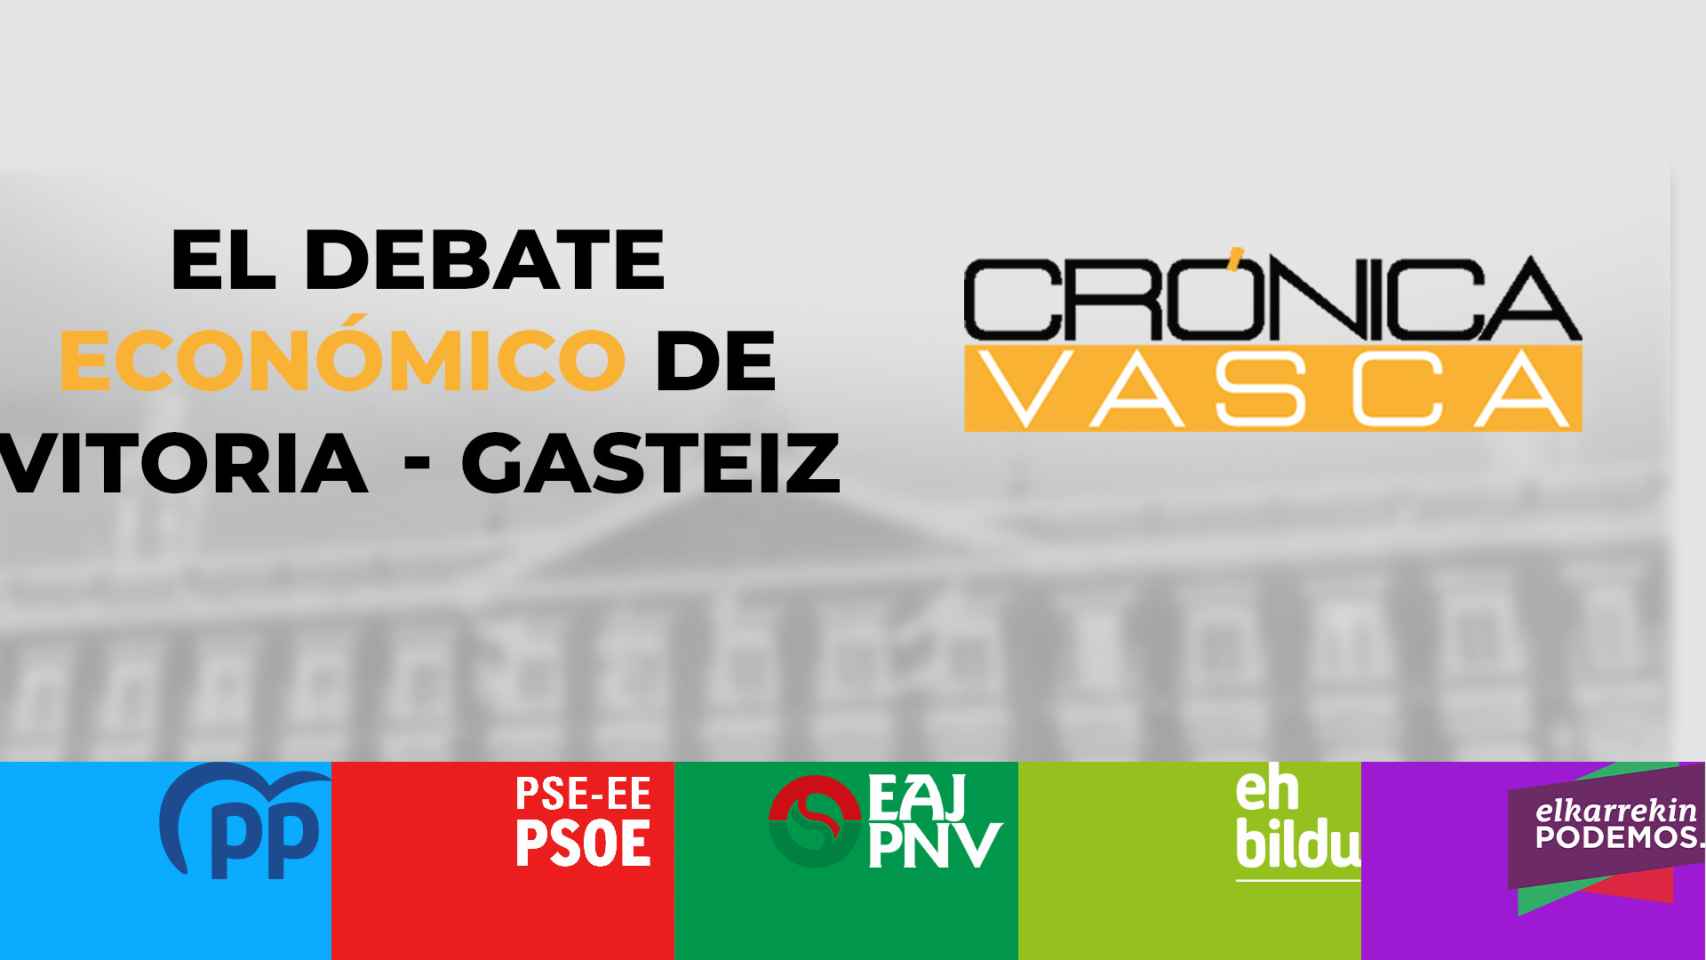 El debate económico de Vitoria - Gasteiz organizado por 'Crónica Vasca' podrá seguirse vía streaming